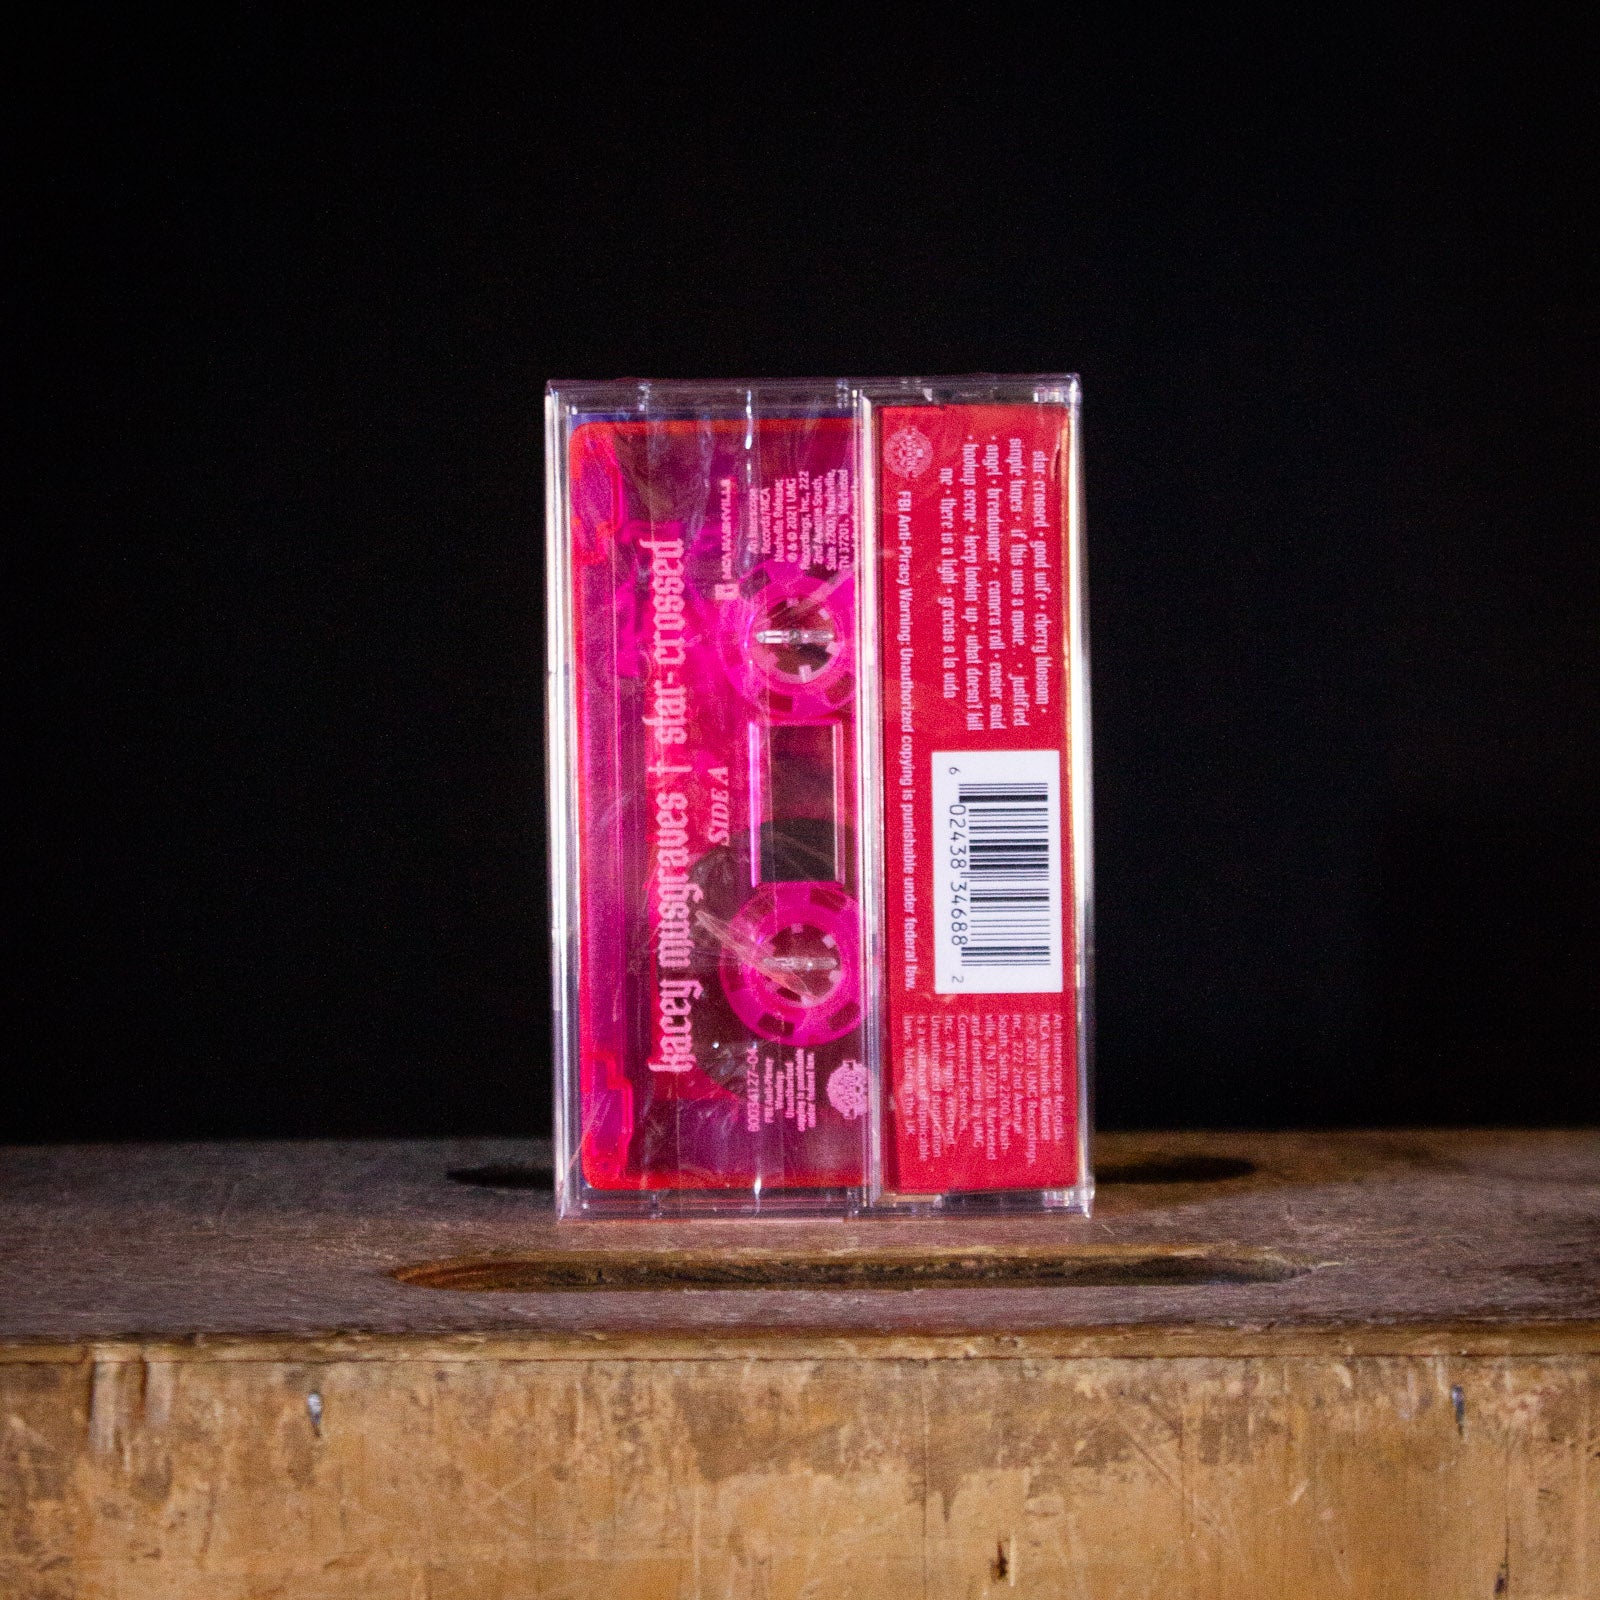 Kasey Musgraves star-crossed Cassette (Translucent Pink)